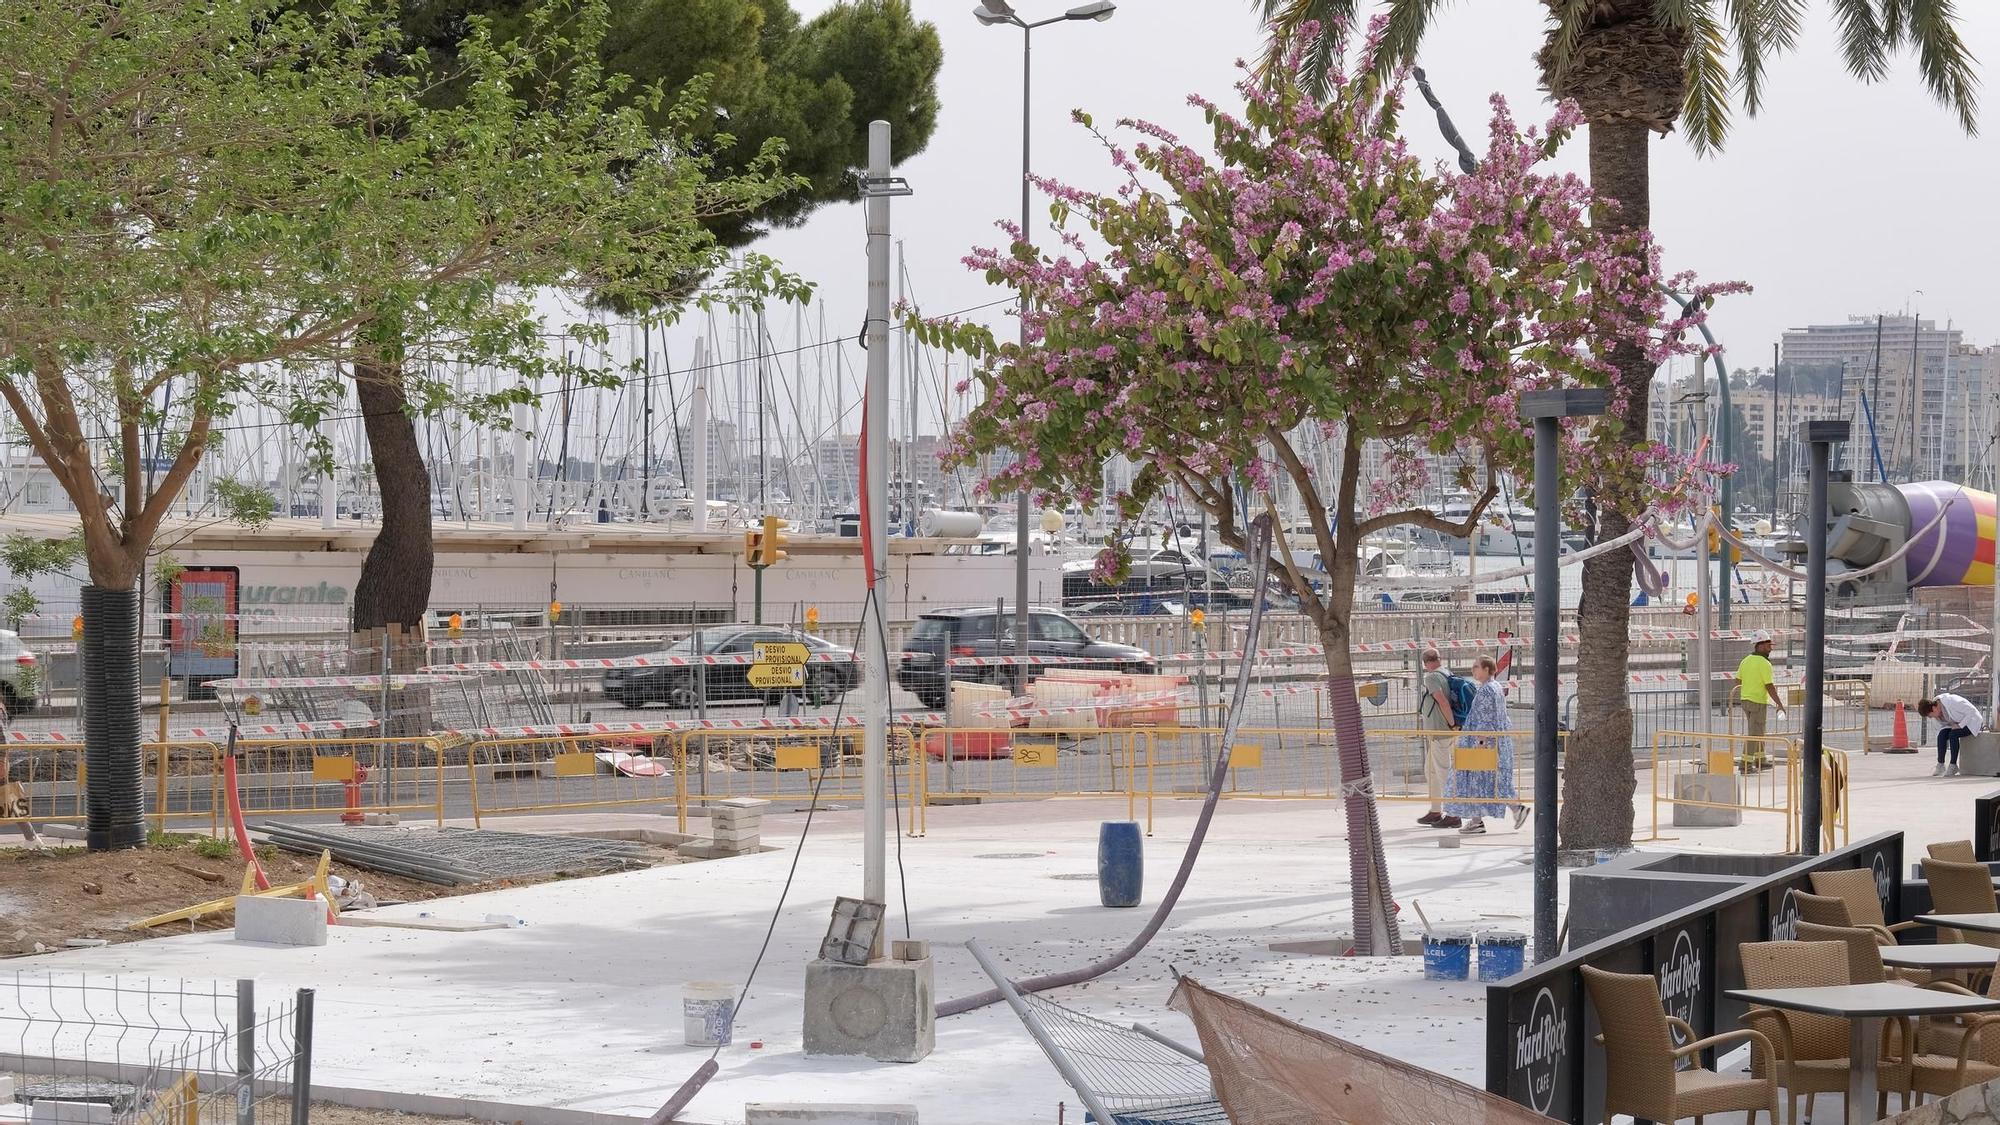 FOTOS: Así van las obras en el Paseo Marítimo de Palma 14 meses después